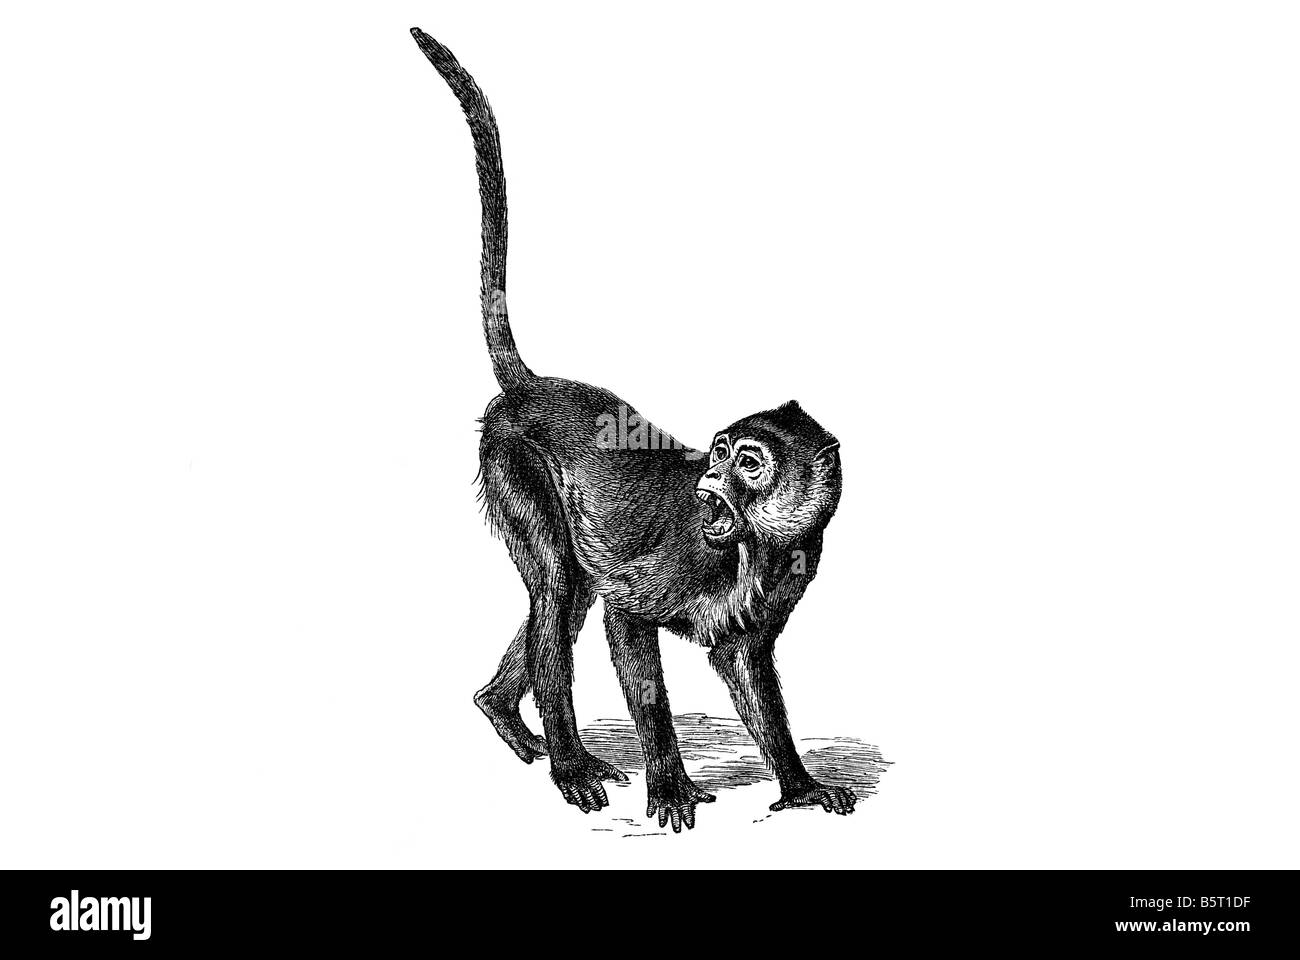 Colobinae Colobine Affen schreienden Affen, asiatischen Affen der alten Welt Stockfoto